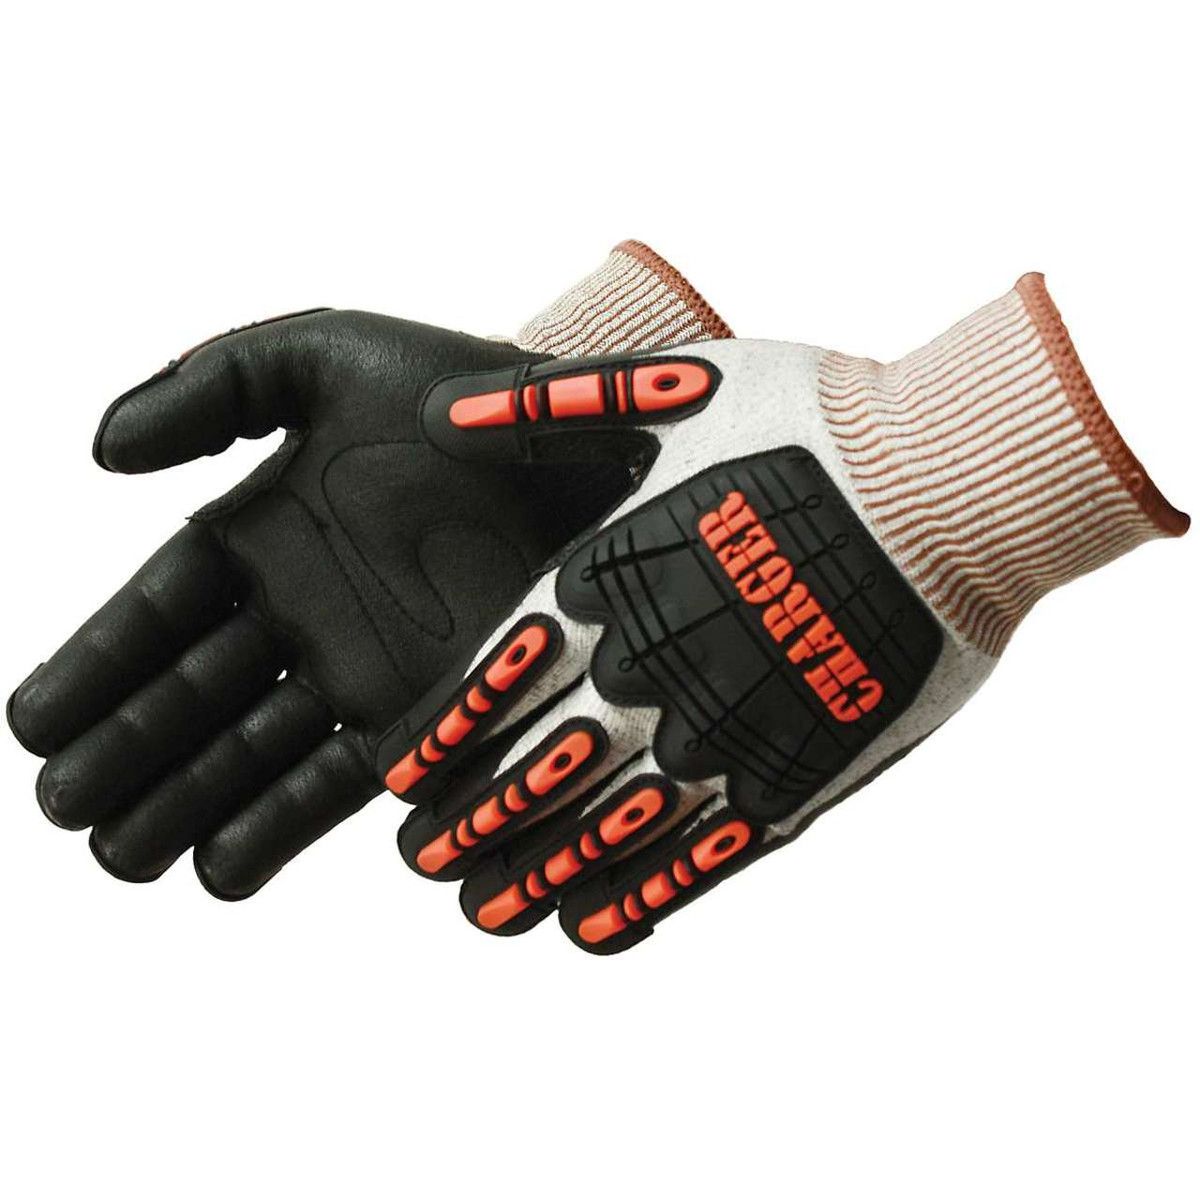 Shock Resistant Safety Gloves